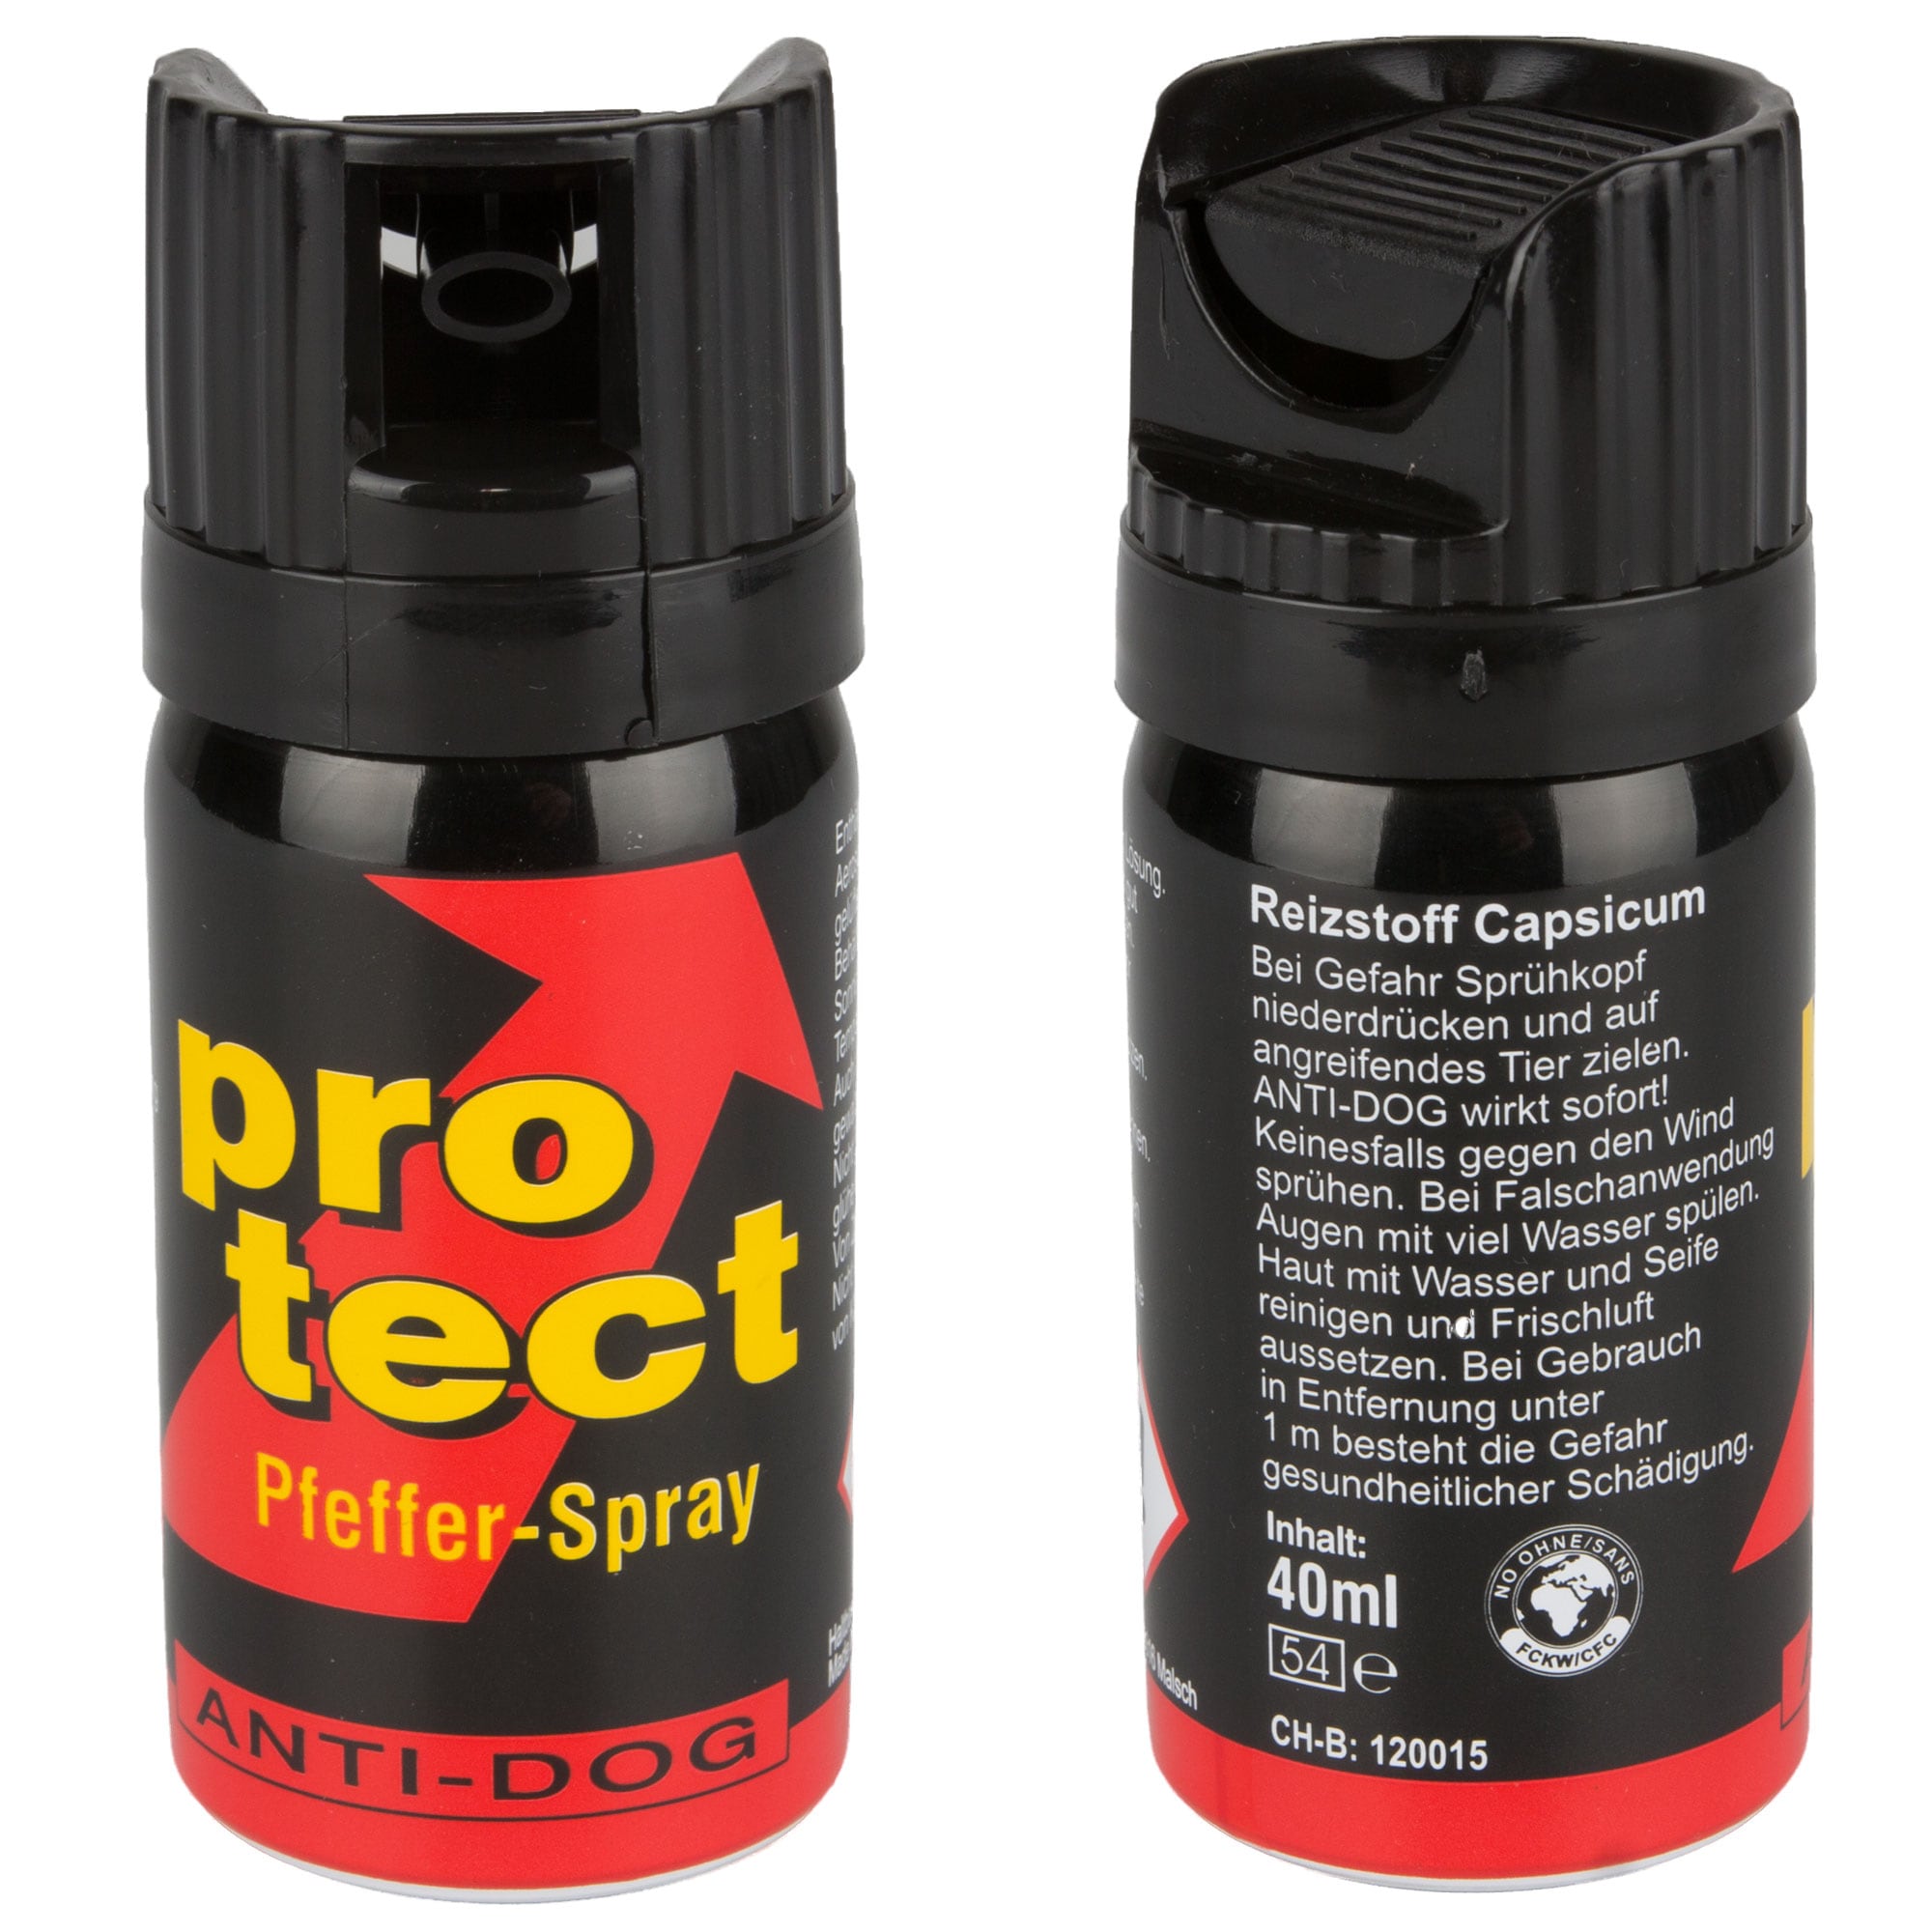 Cono ProTect Anti-Dog de 15 ml spray de pimienta